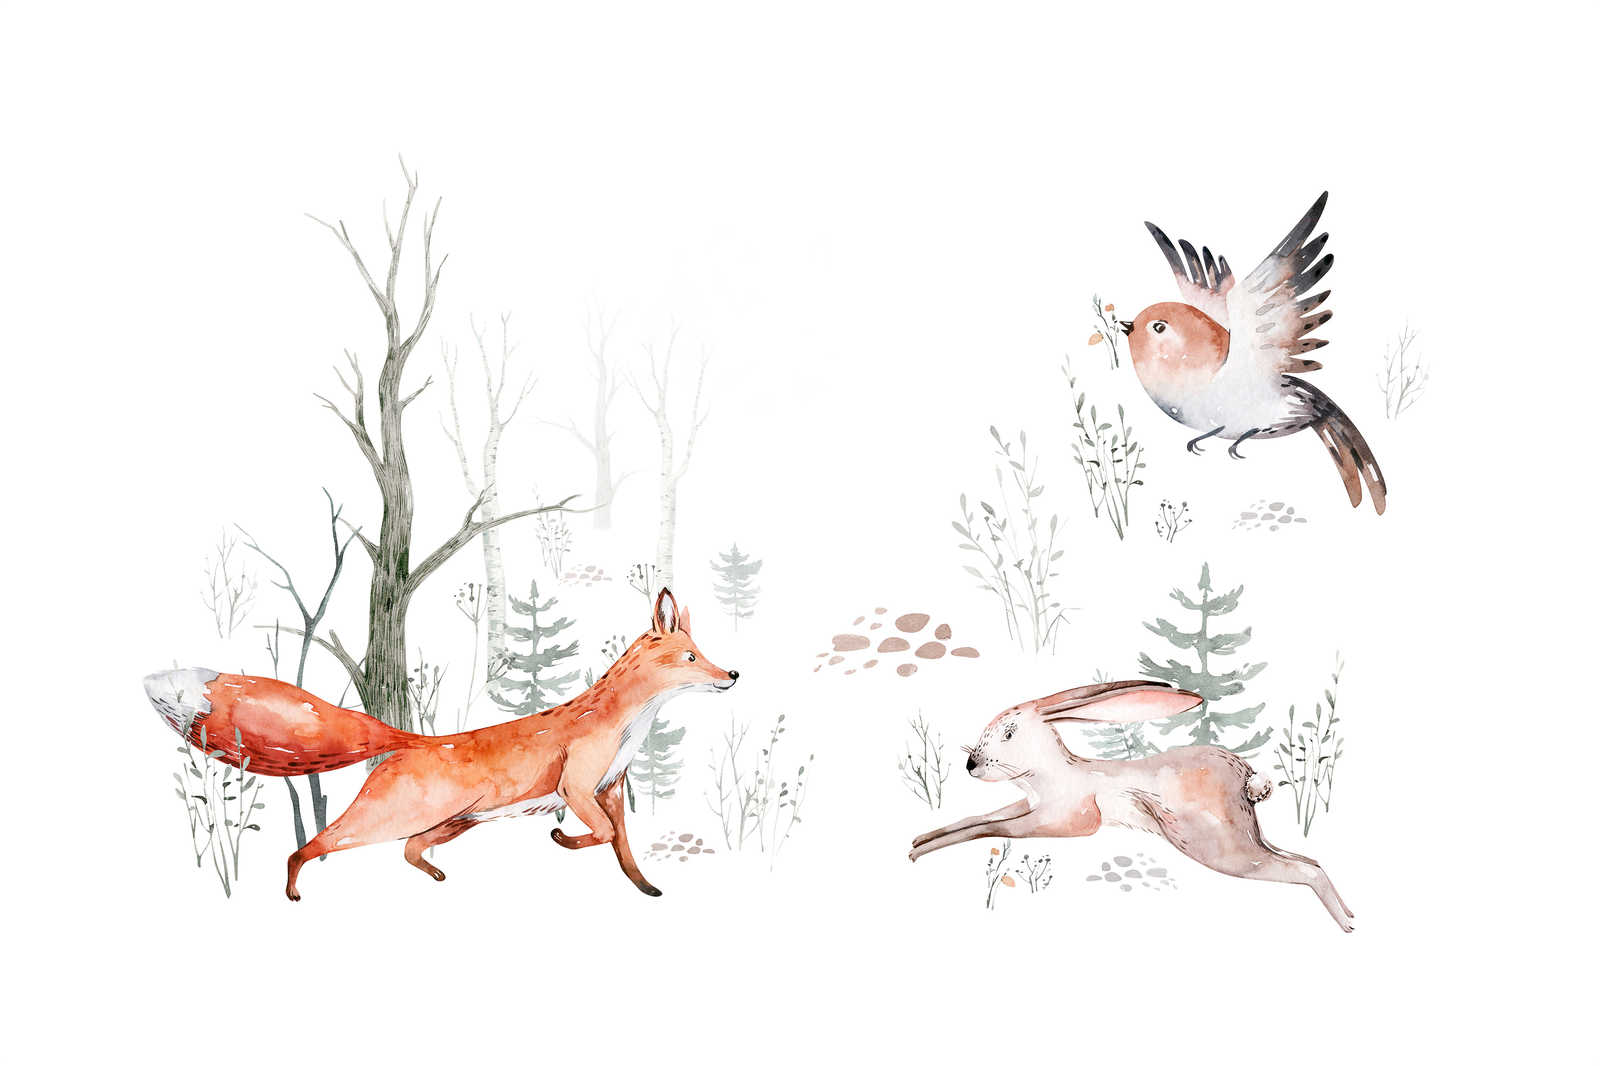             Leinwandbild mit Tieren im Wald fürs Kinderzimmer – 0,90 m x 0,60 m
        